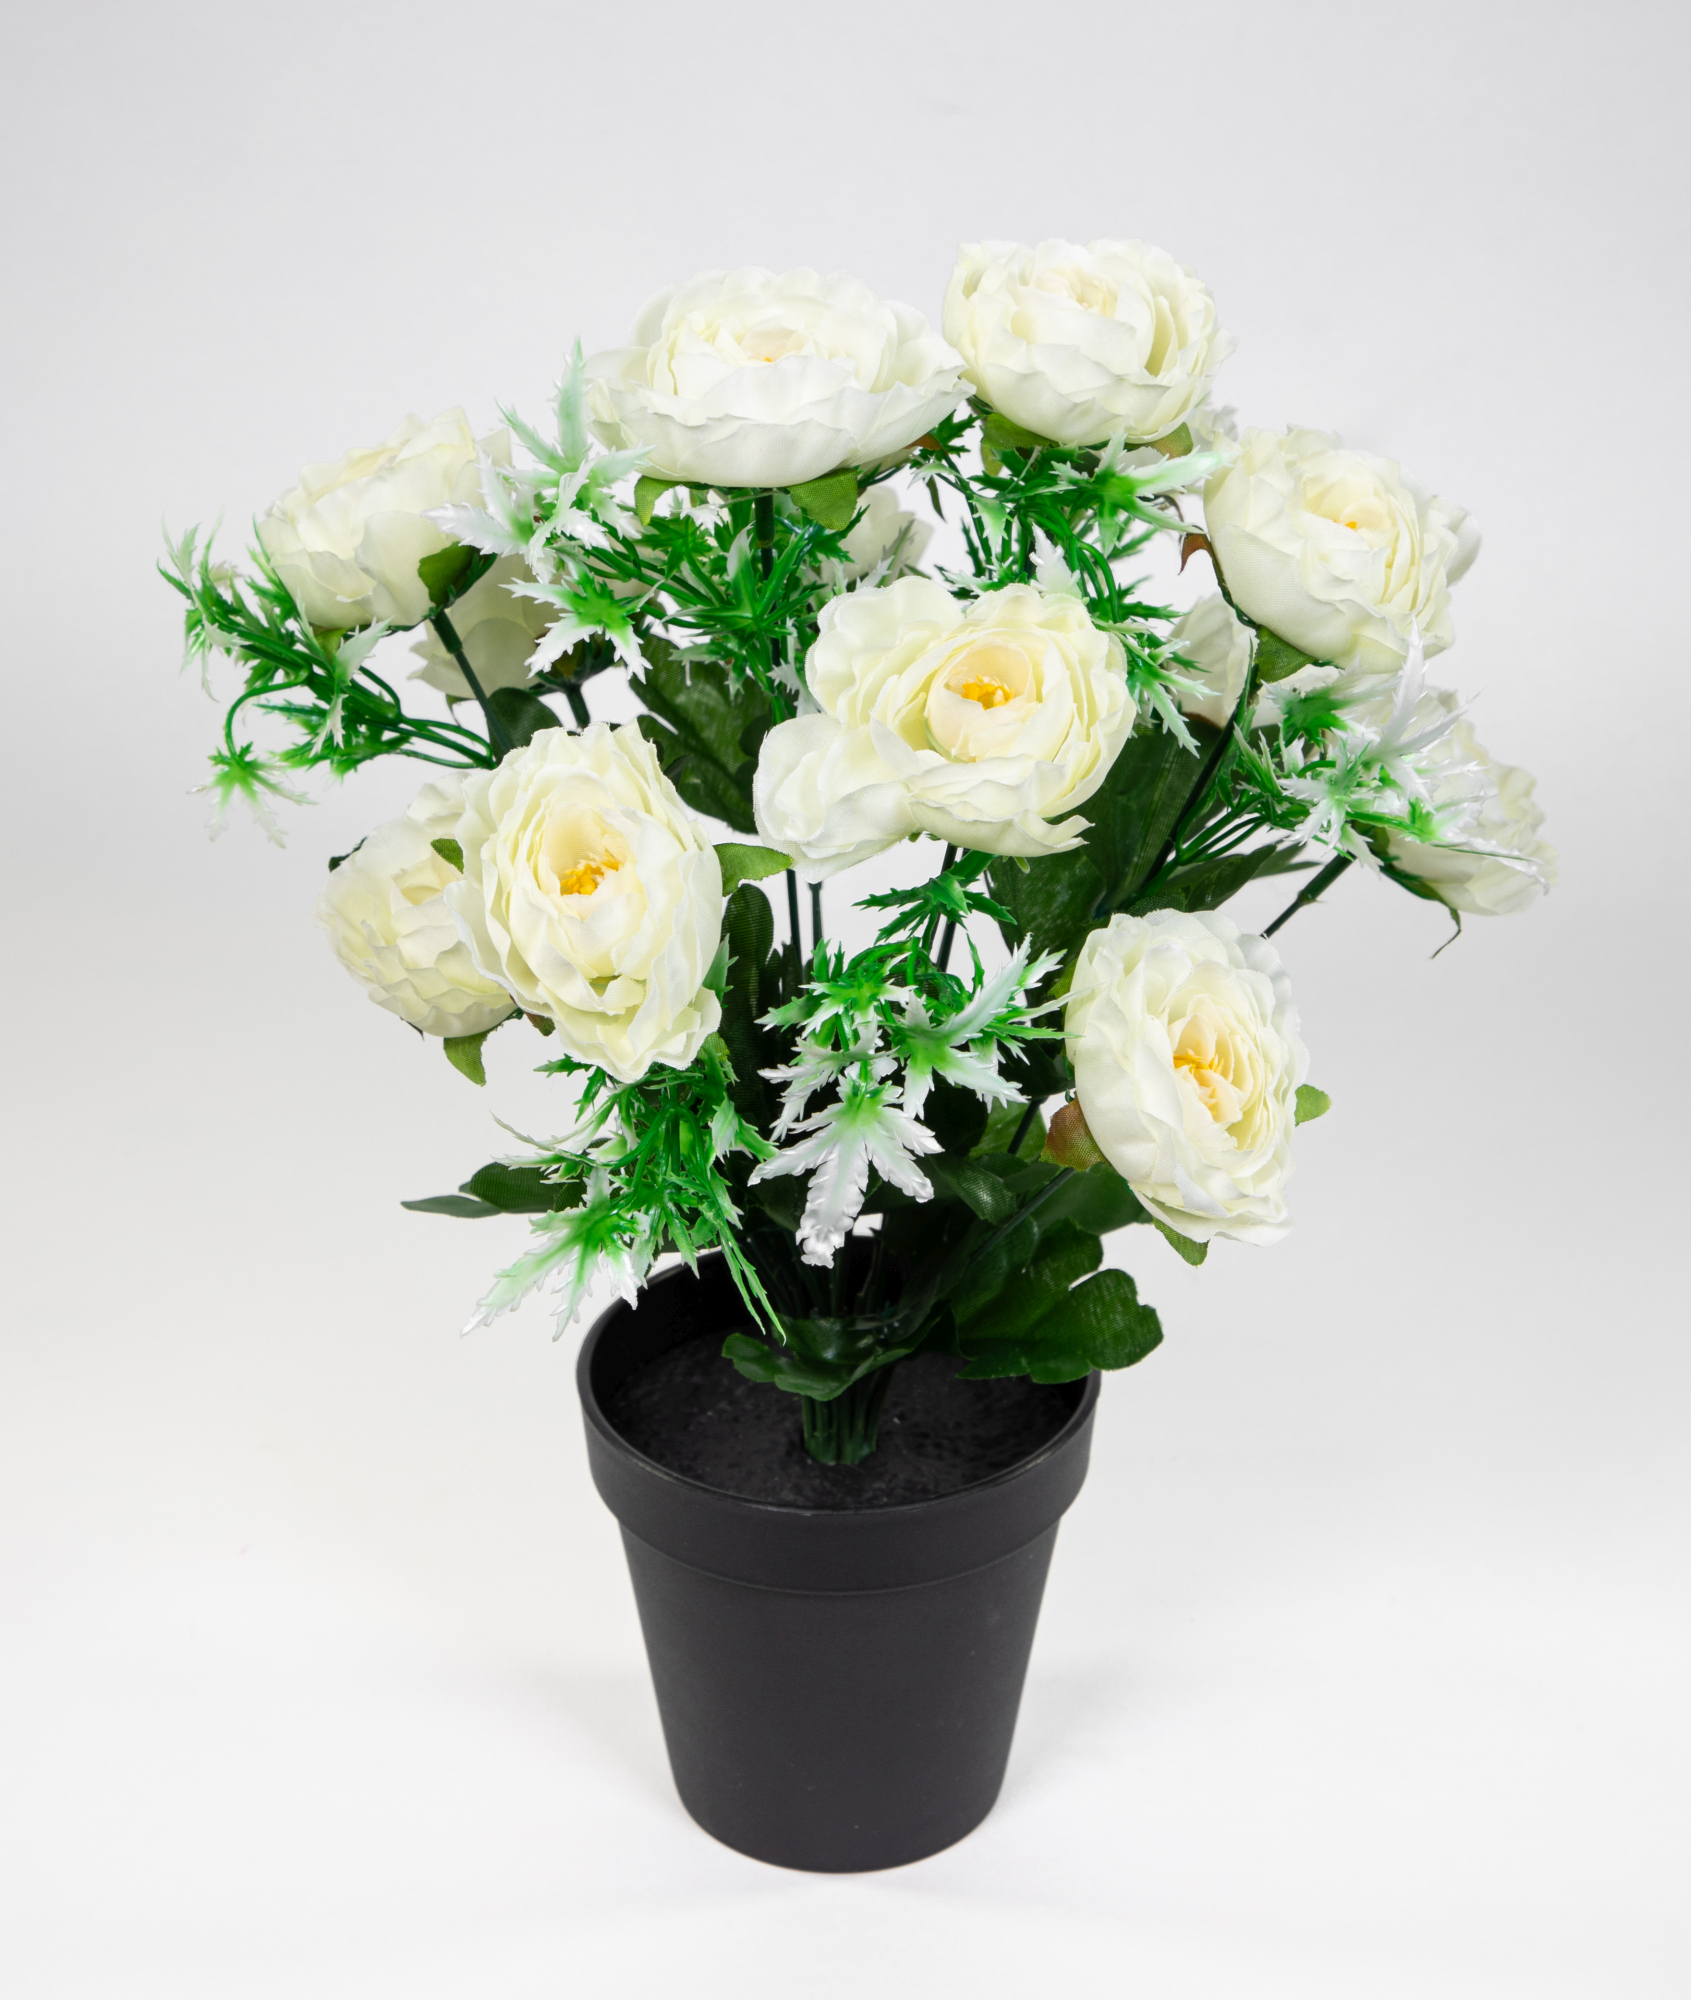 Ranunkelbusch 34cm weiß im Kunstpflanzen JA Kunstblumen künstliche Blumen Ranunkel Topf